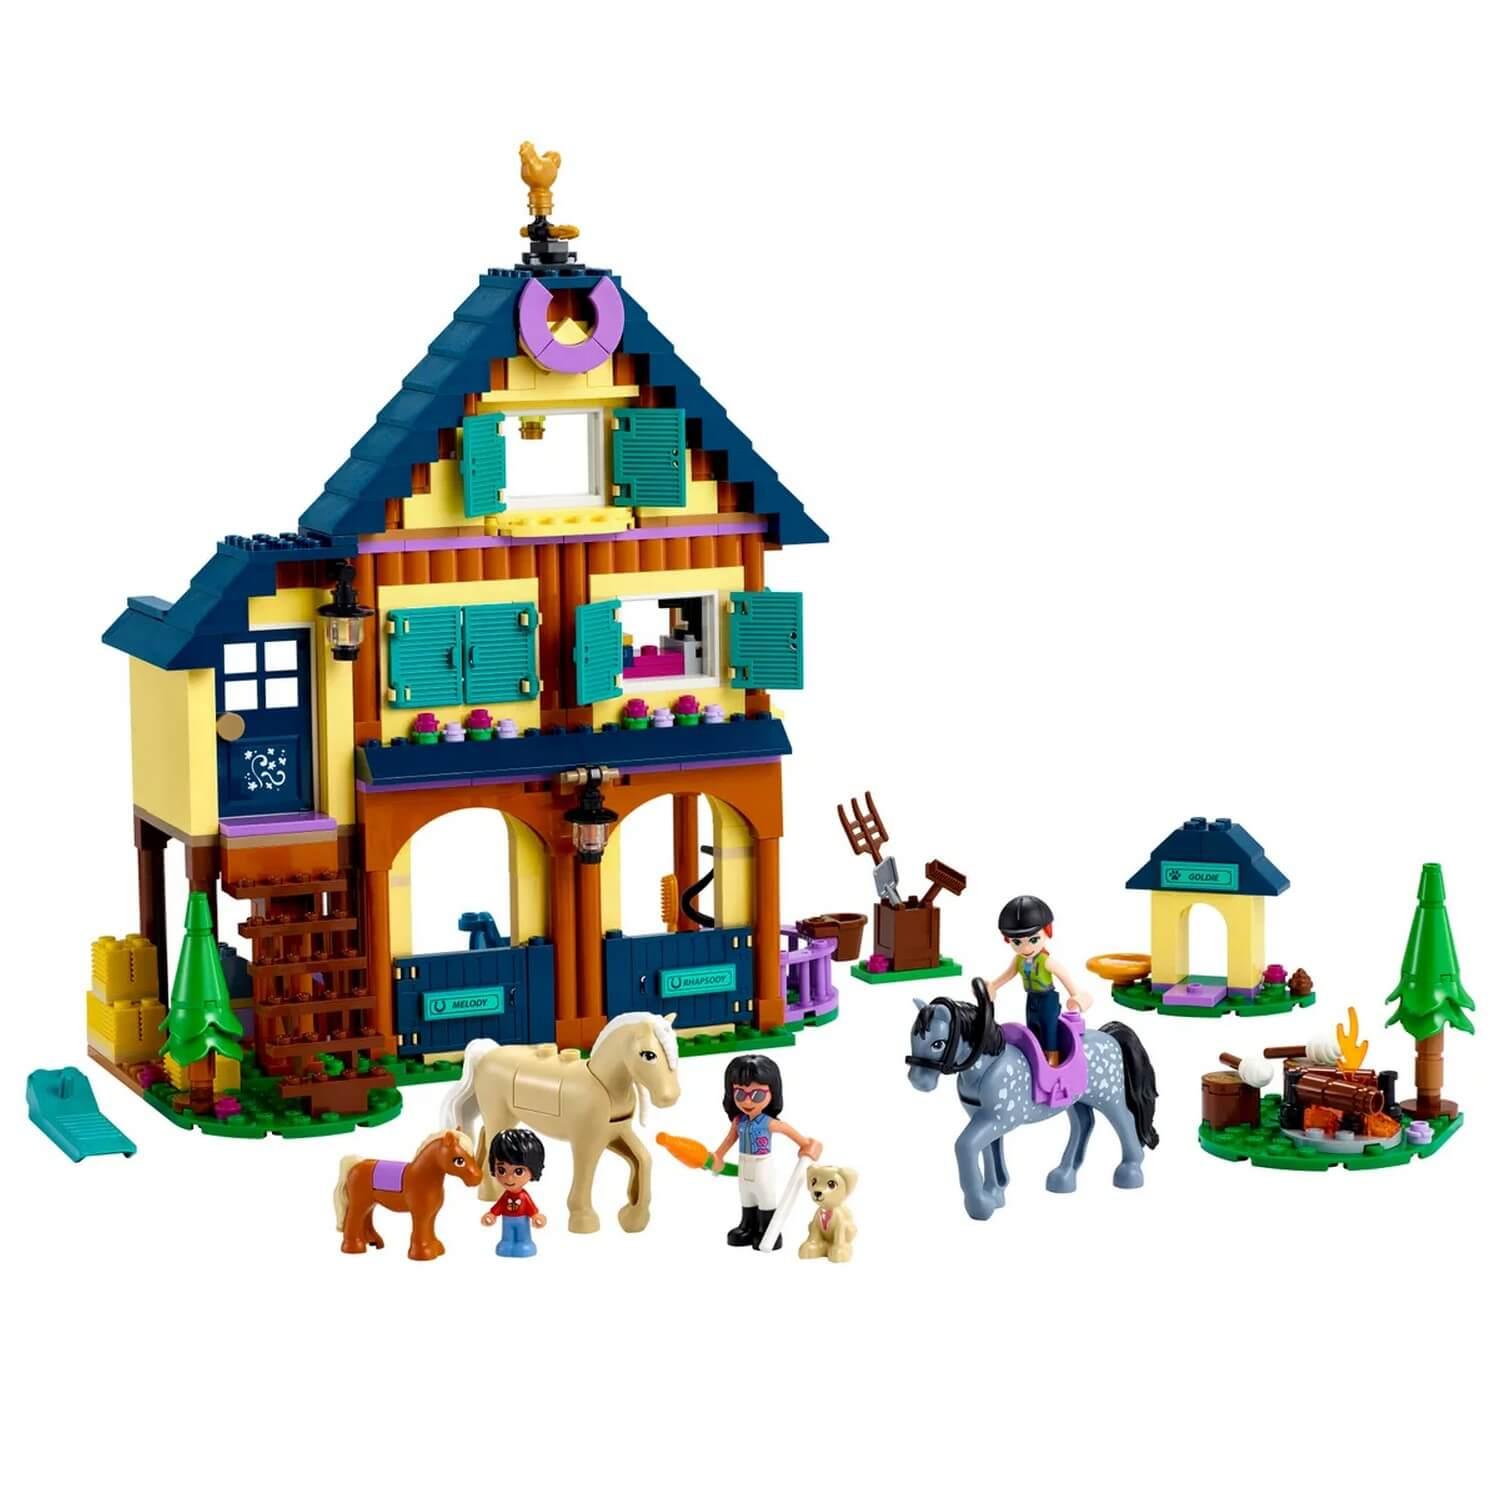 Puzzle 1000 pièces adultes Lego 1000 pièces - Sous-couche Lego avec des  couleurs